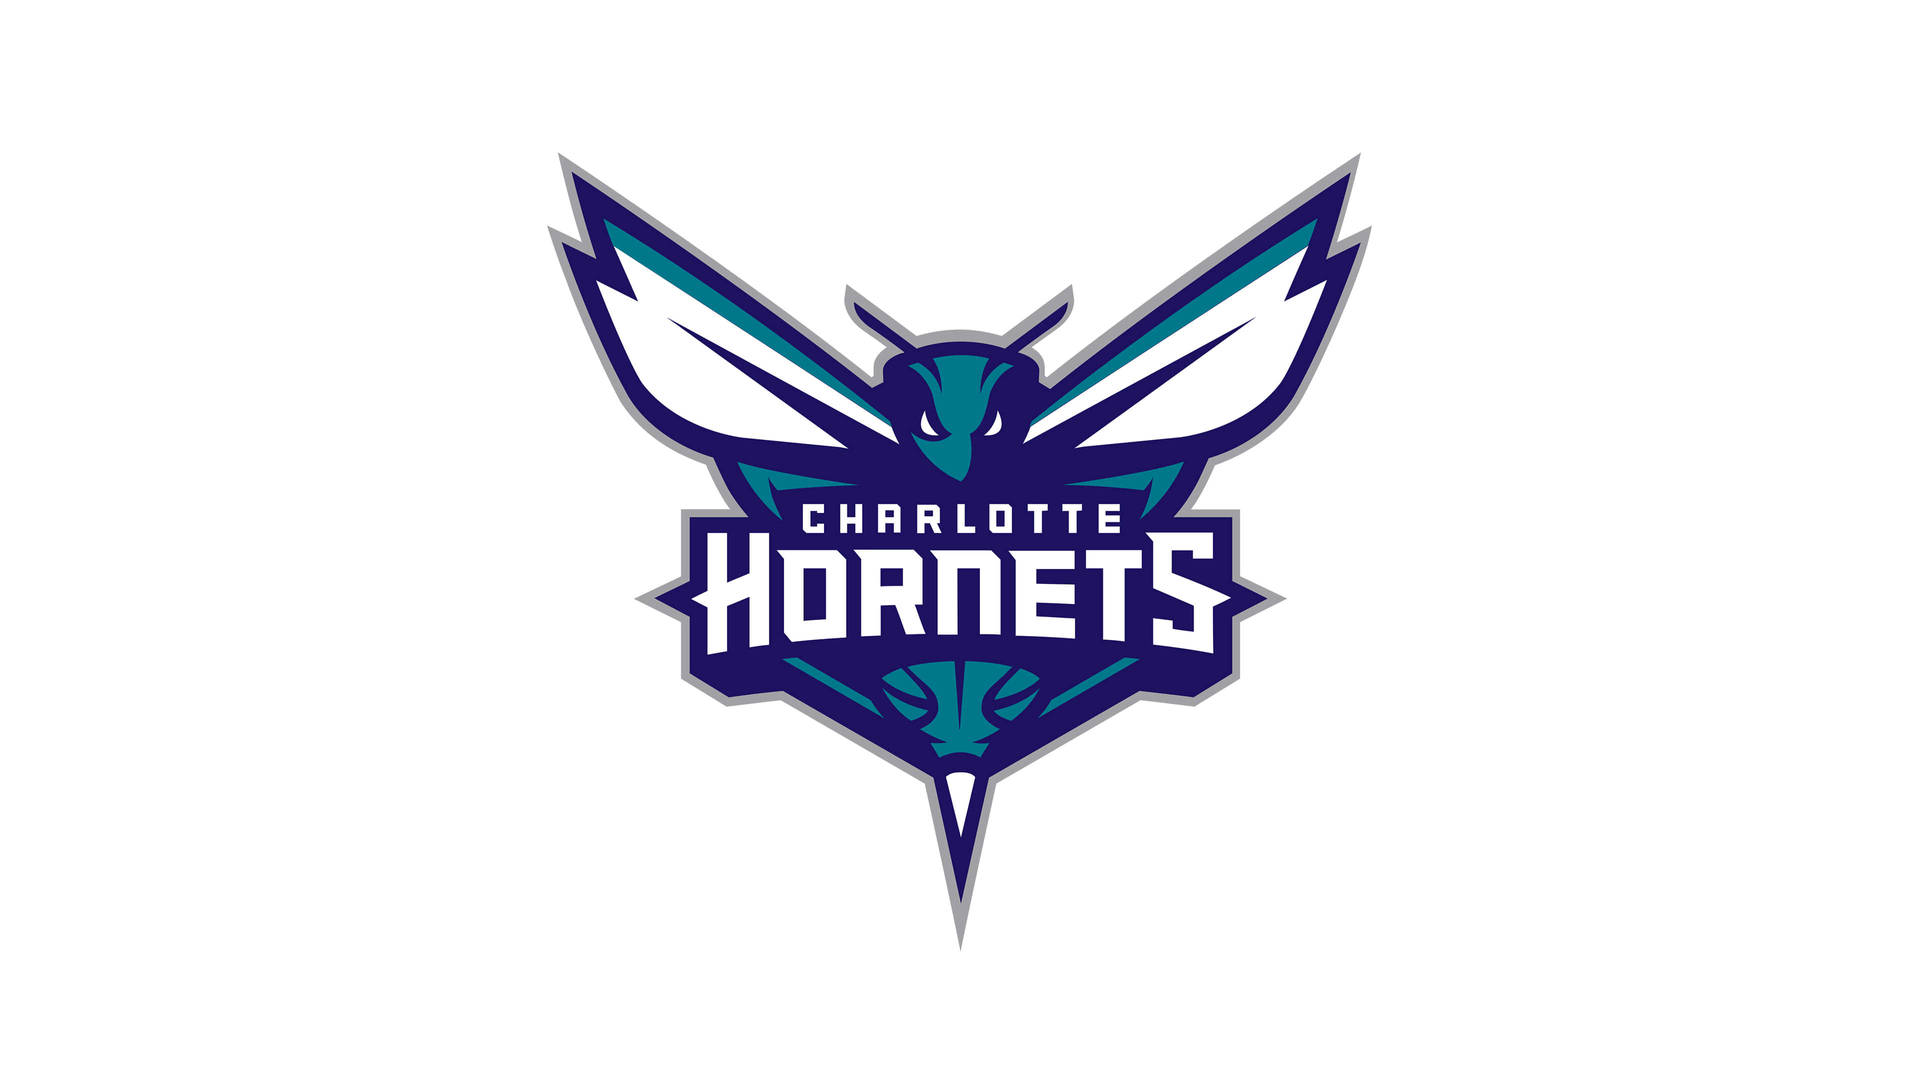 Charlotte Hornets Official Logo Wallpaper